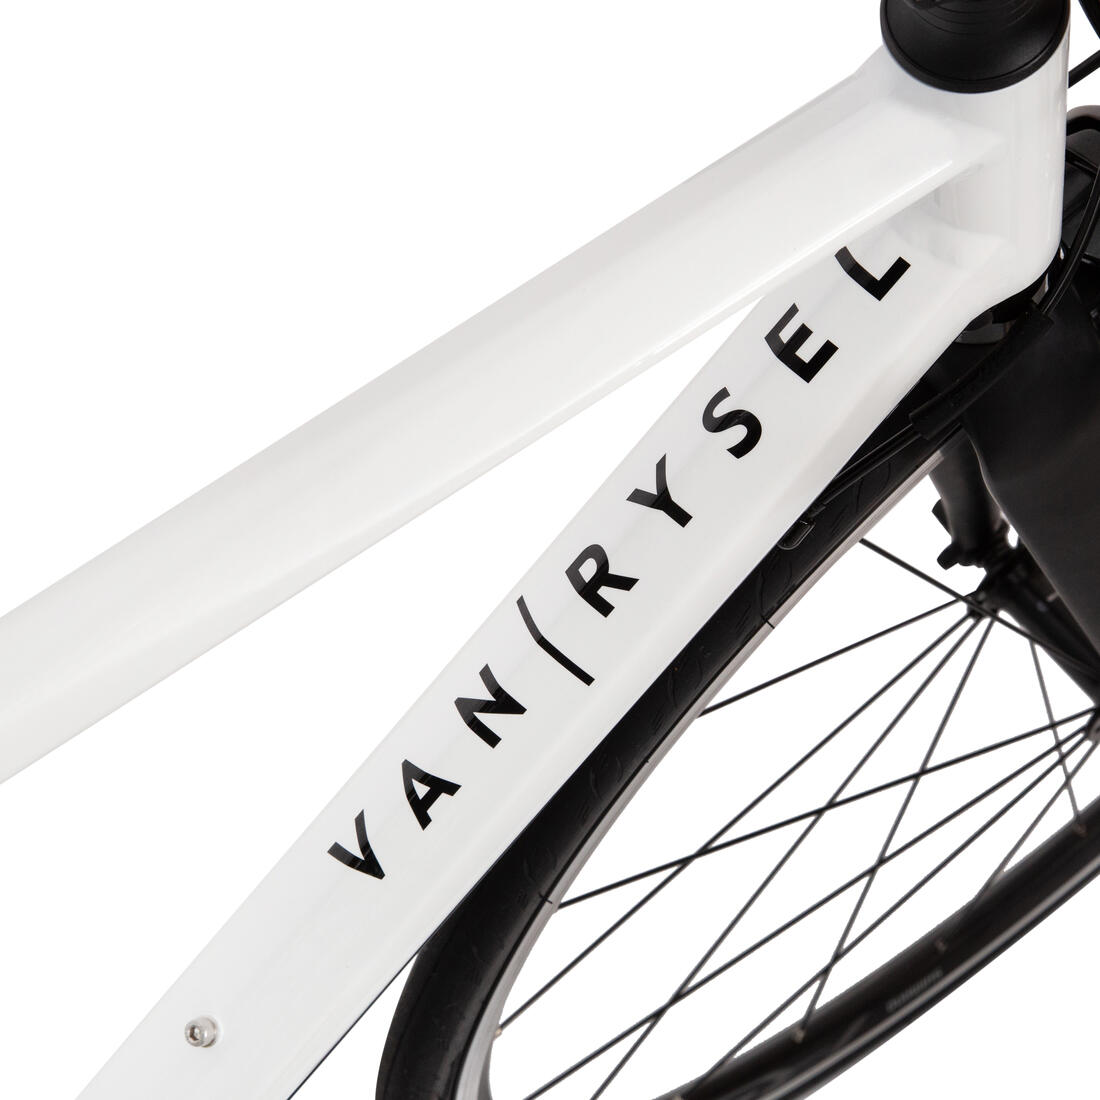 VAN RYSEL(ヴァンリーゼル) サイクリング ロードレーシングバイク 自転車 大人用